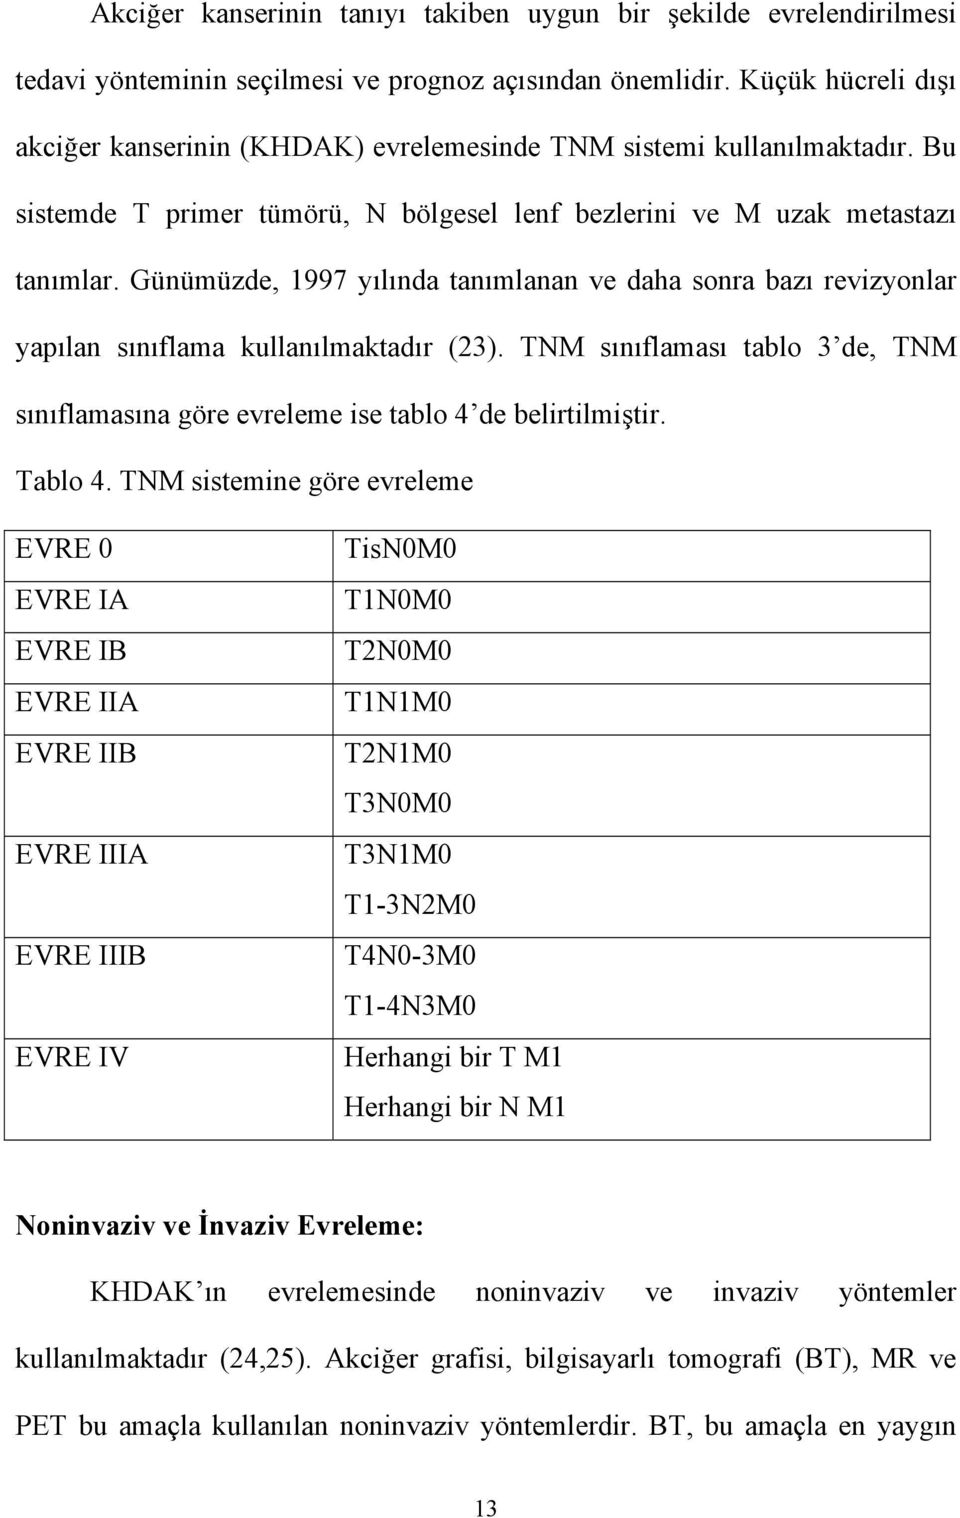 Günümüzde, 1997 yılında tanımlanan ve daha sonra bazı revizyonlar yapılan sınıflama kullanılmaktadır (23). TNM sınıflaması tablo 3 de, TNM sınıflamasına göre evreleme ise tablo 4 de belirtilmiştir.